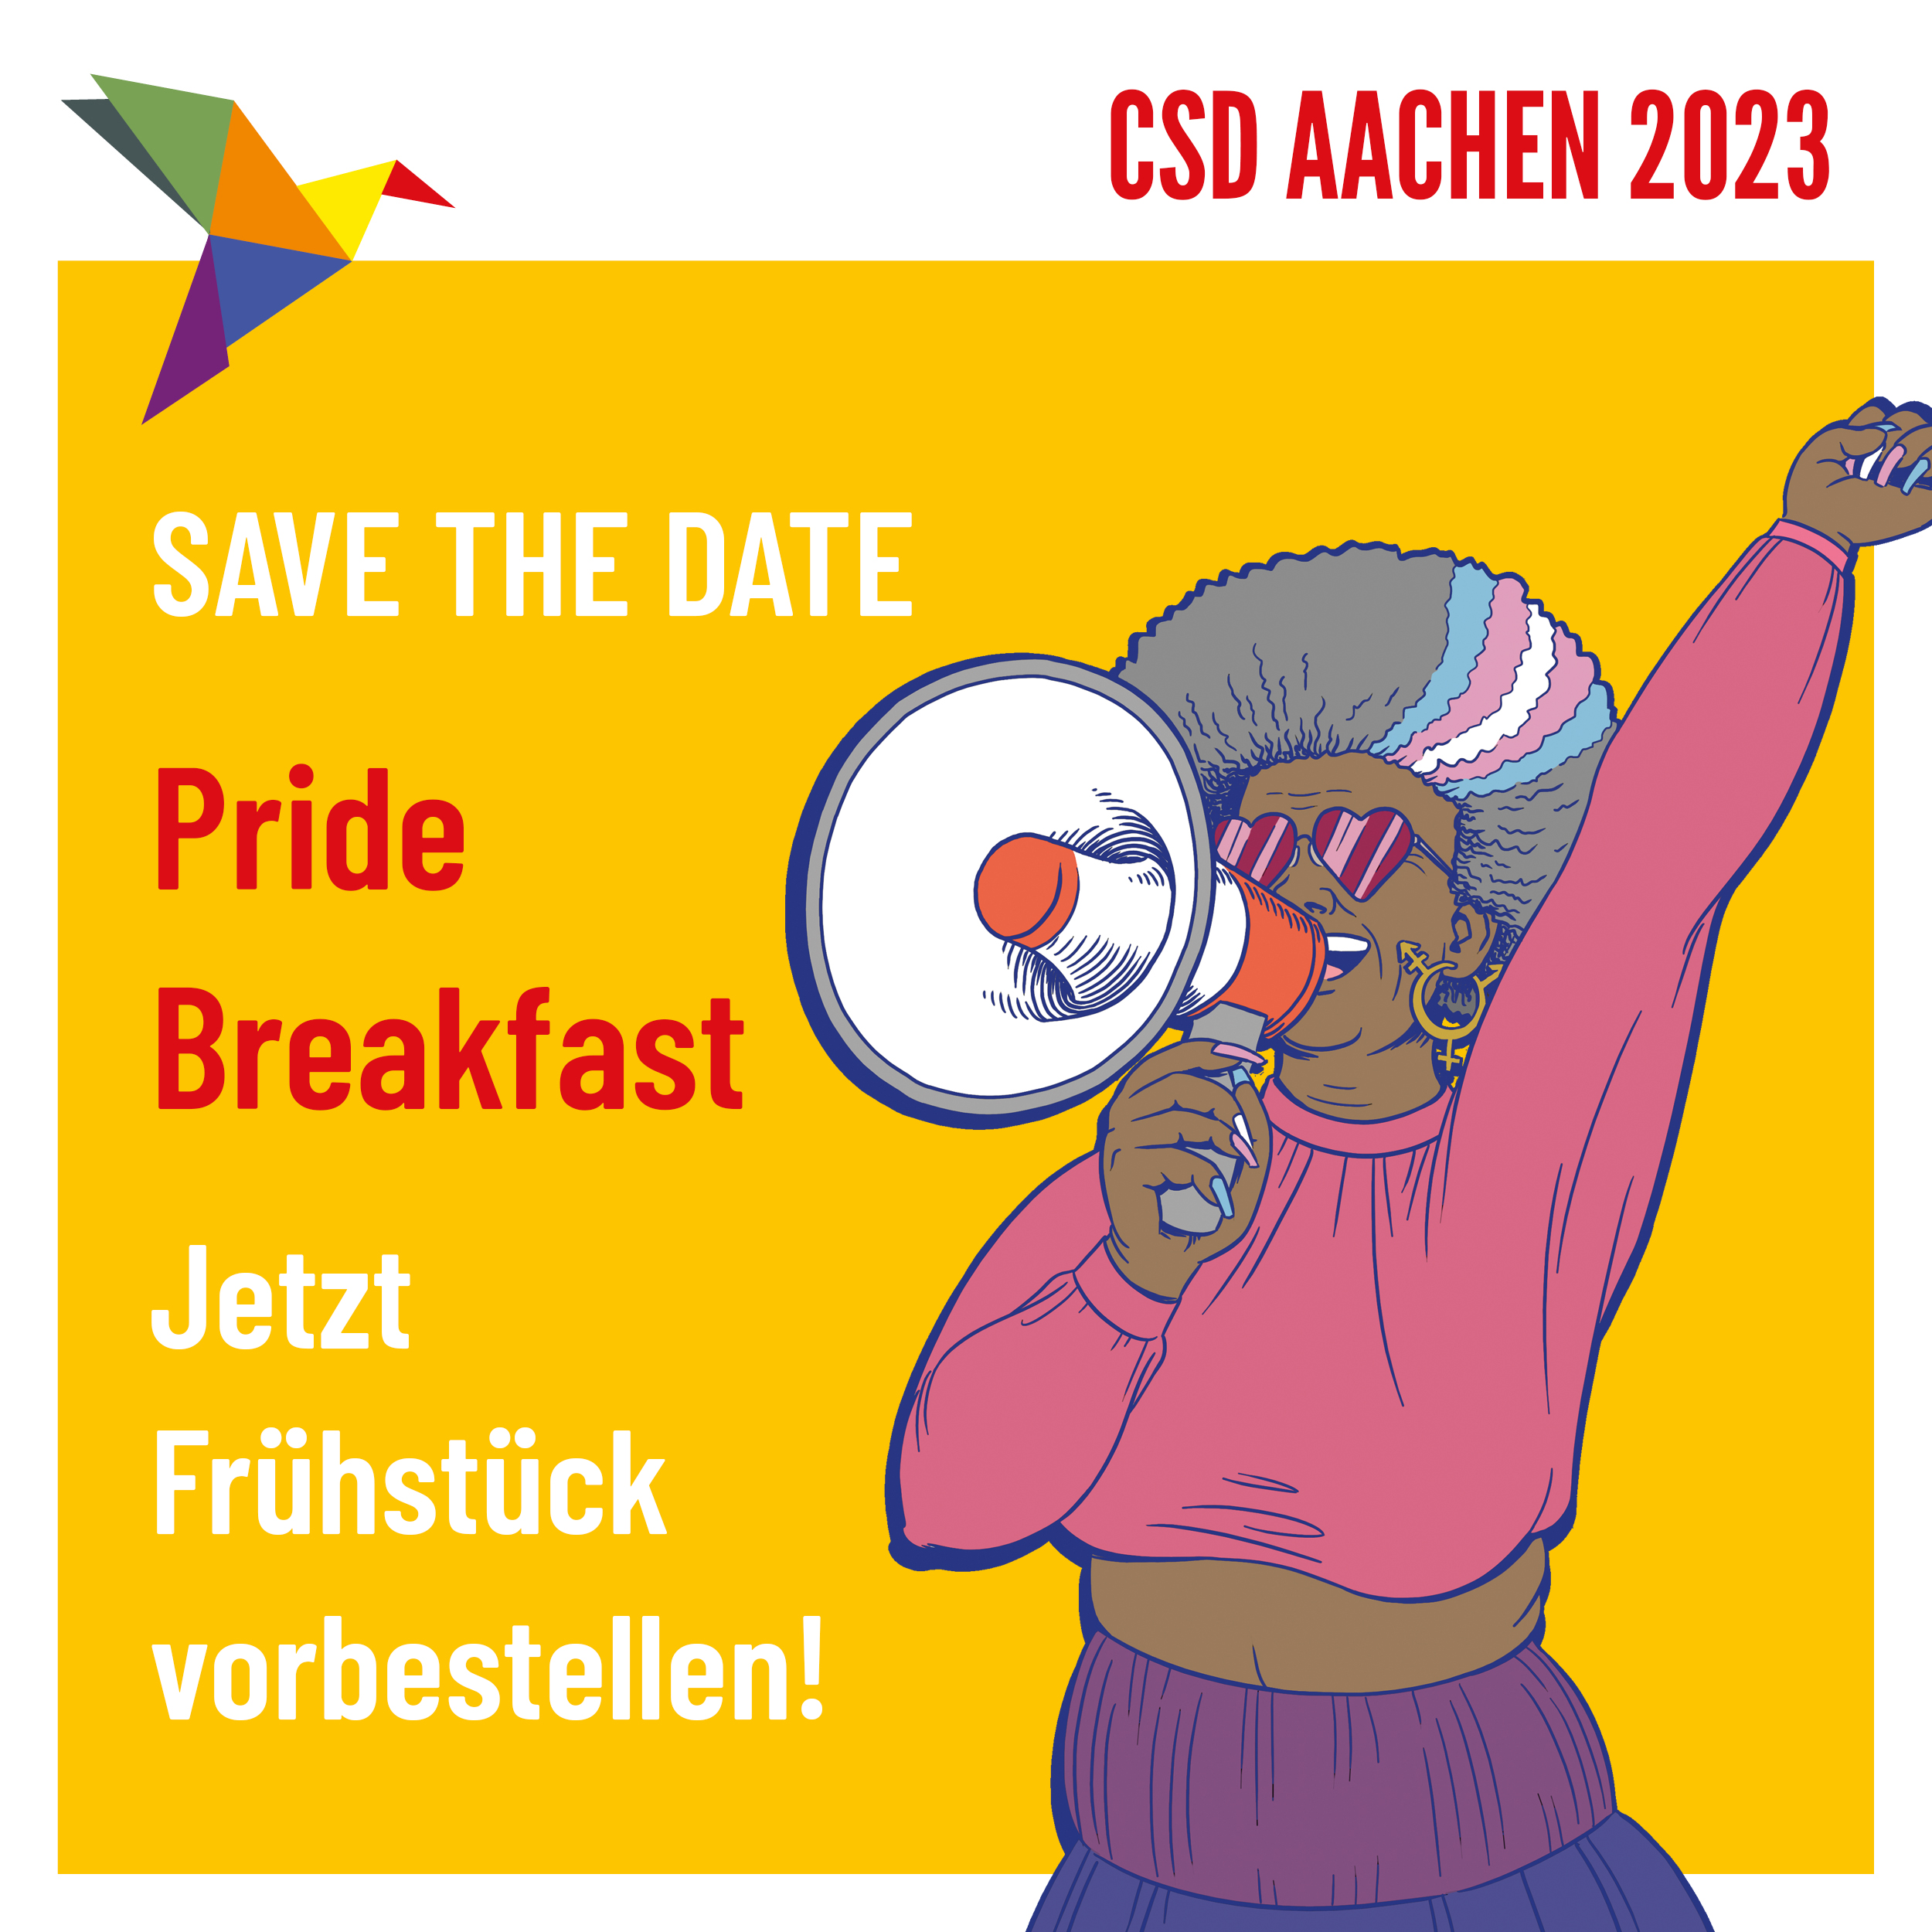 PRIDE-Breakfast am 13. August zum CSD-Aachen